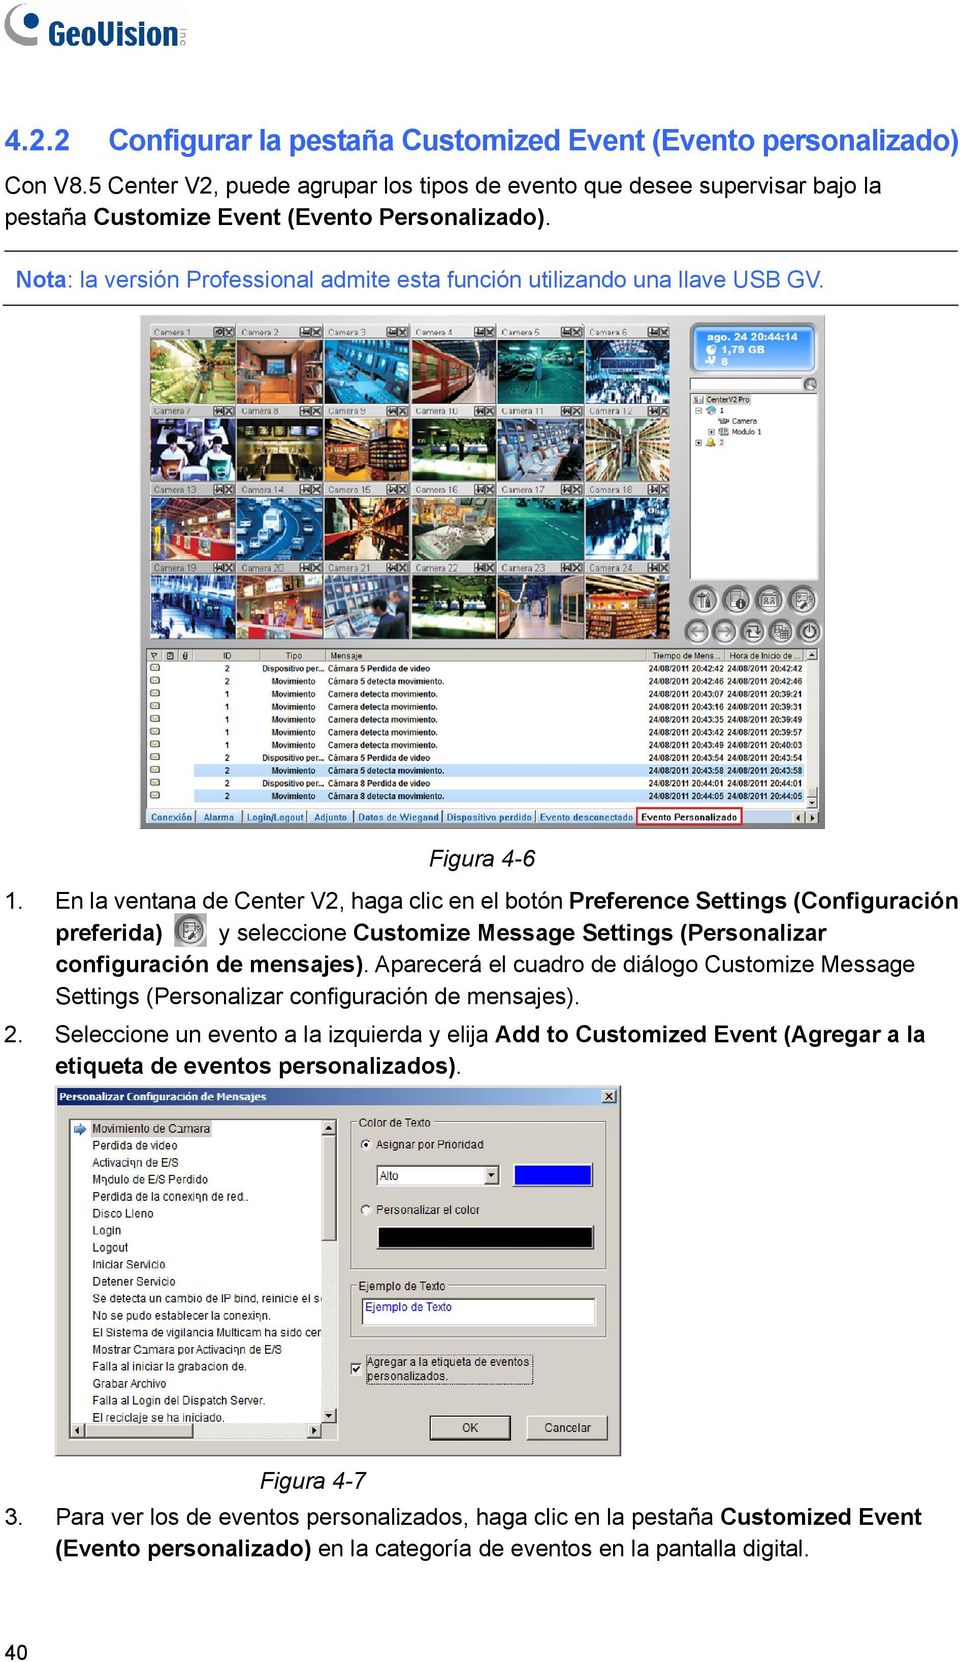 En la ventana de Center V2, haga clic en el botón Preference Settings (Configuración preferida) y seleccione Customize Message Settings (Personalizar configuración de mensajes).